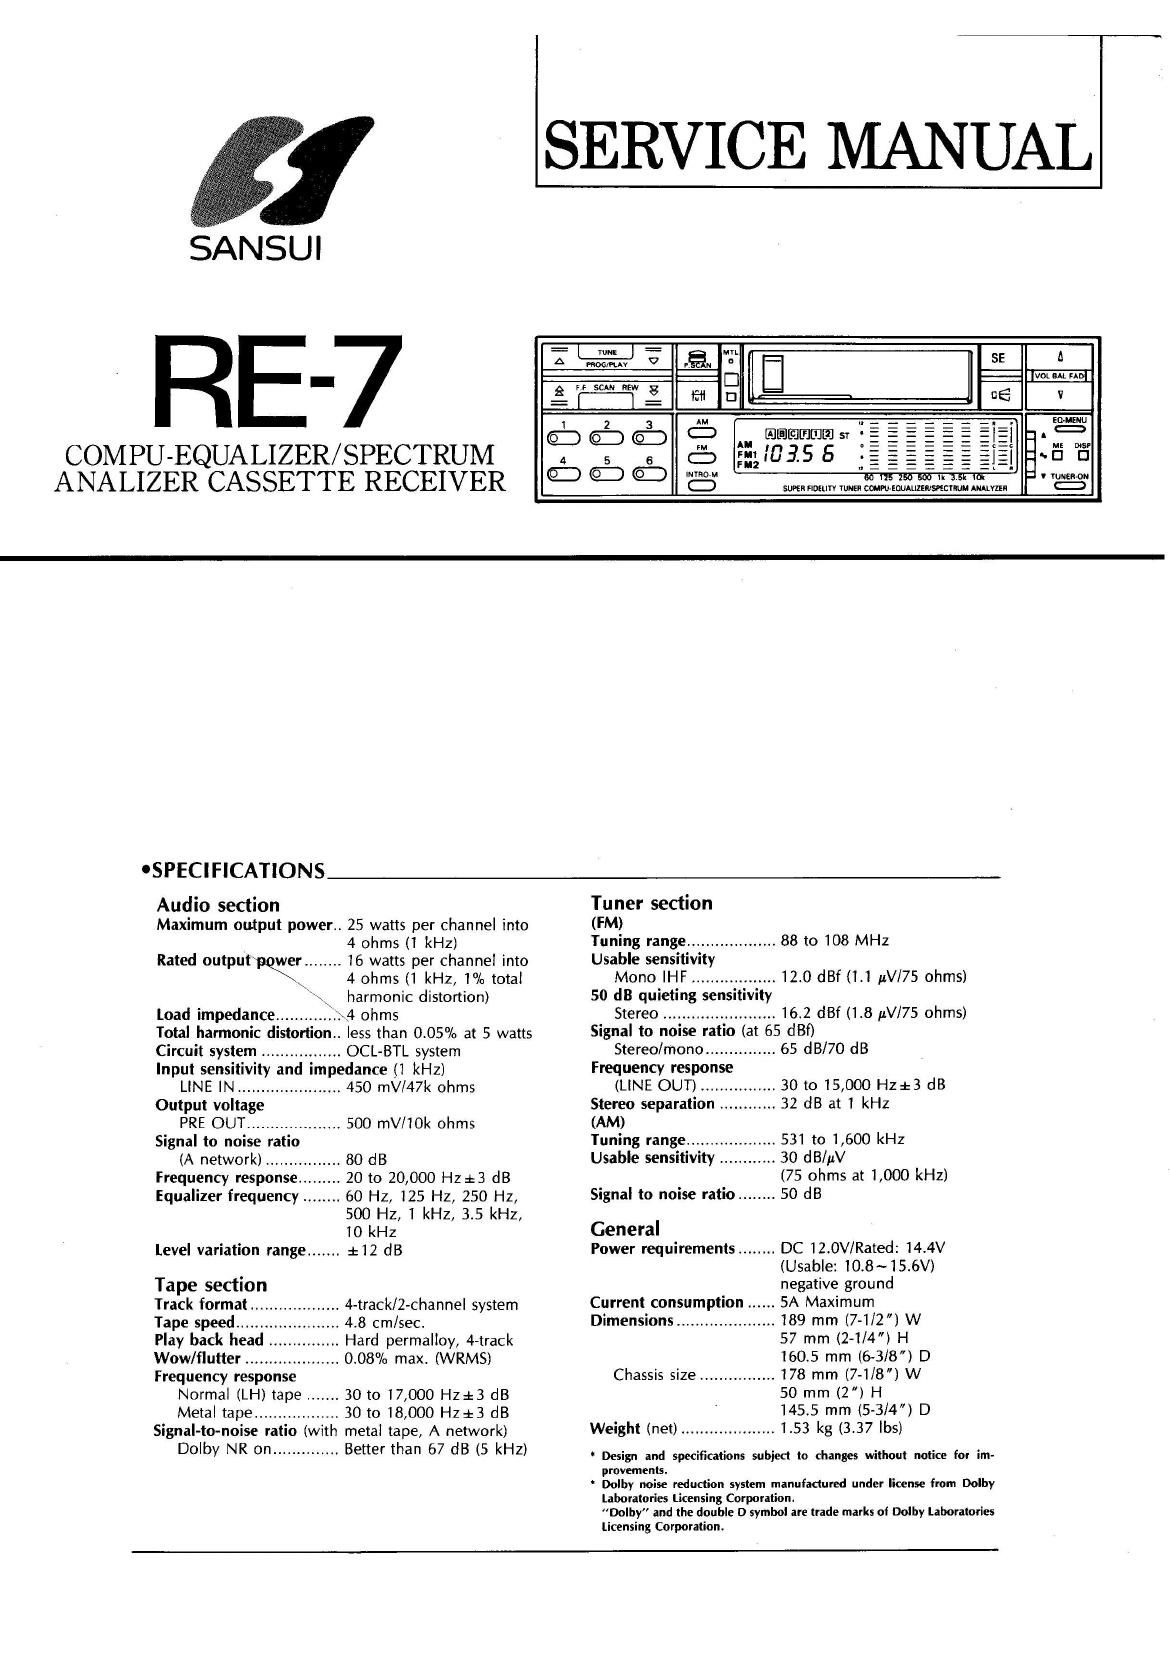 Sansui RE 7 Service Manual